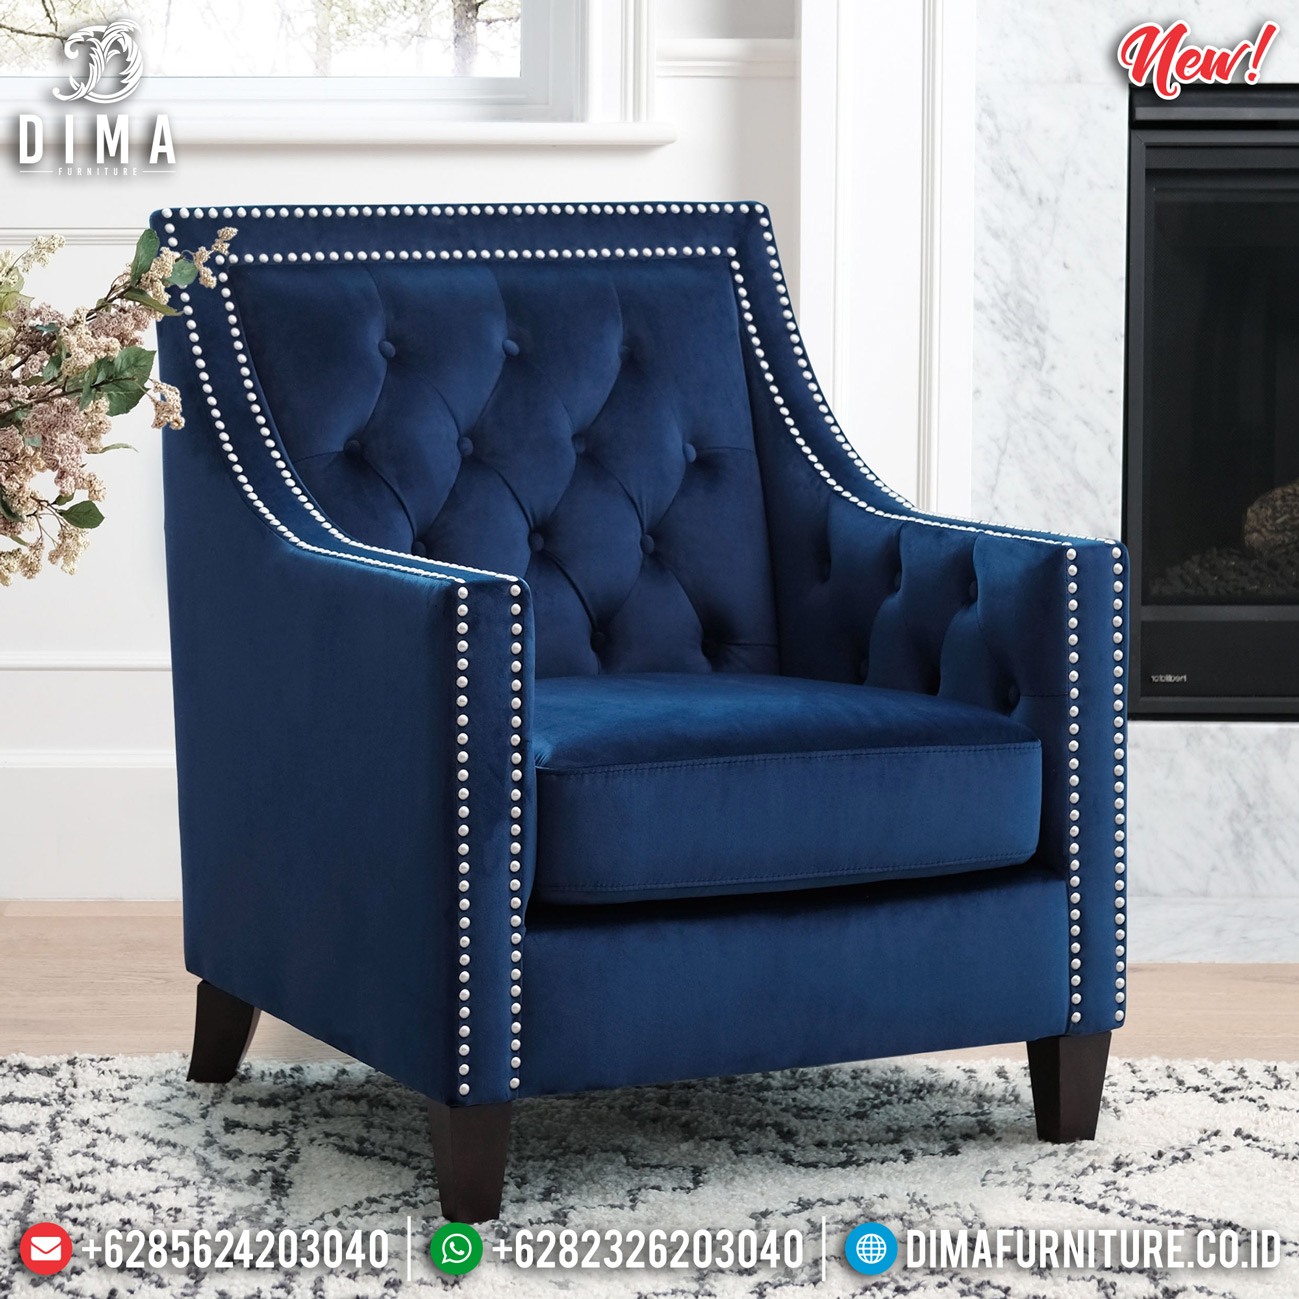 Kursi Sofa Minimalis Mewah New Epic Desain Furniture Jepara Terbaru TTJ-0809